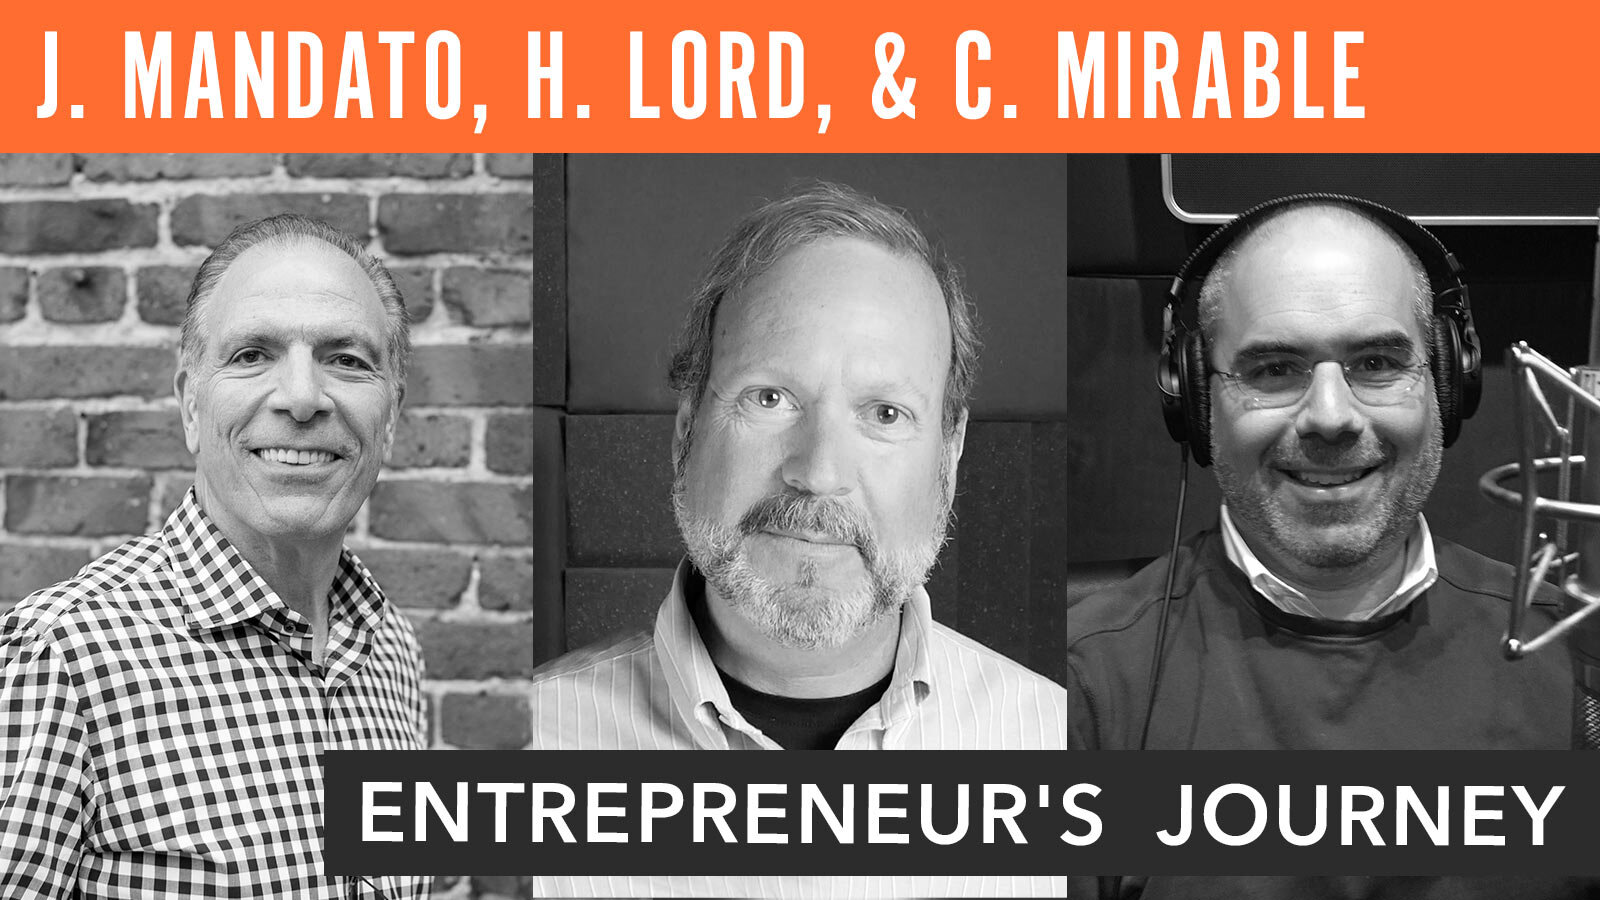 Joe Mandato, Ham Lord, & Christopher Mirable, "Entrepreneur's Journey"